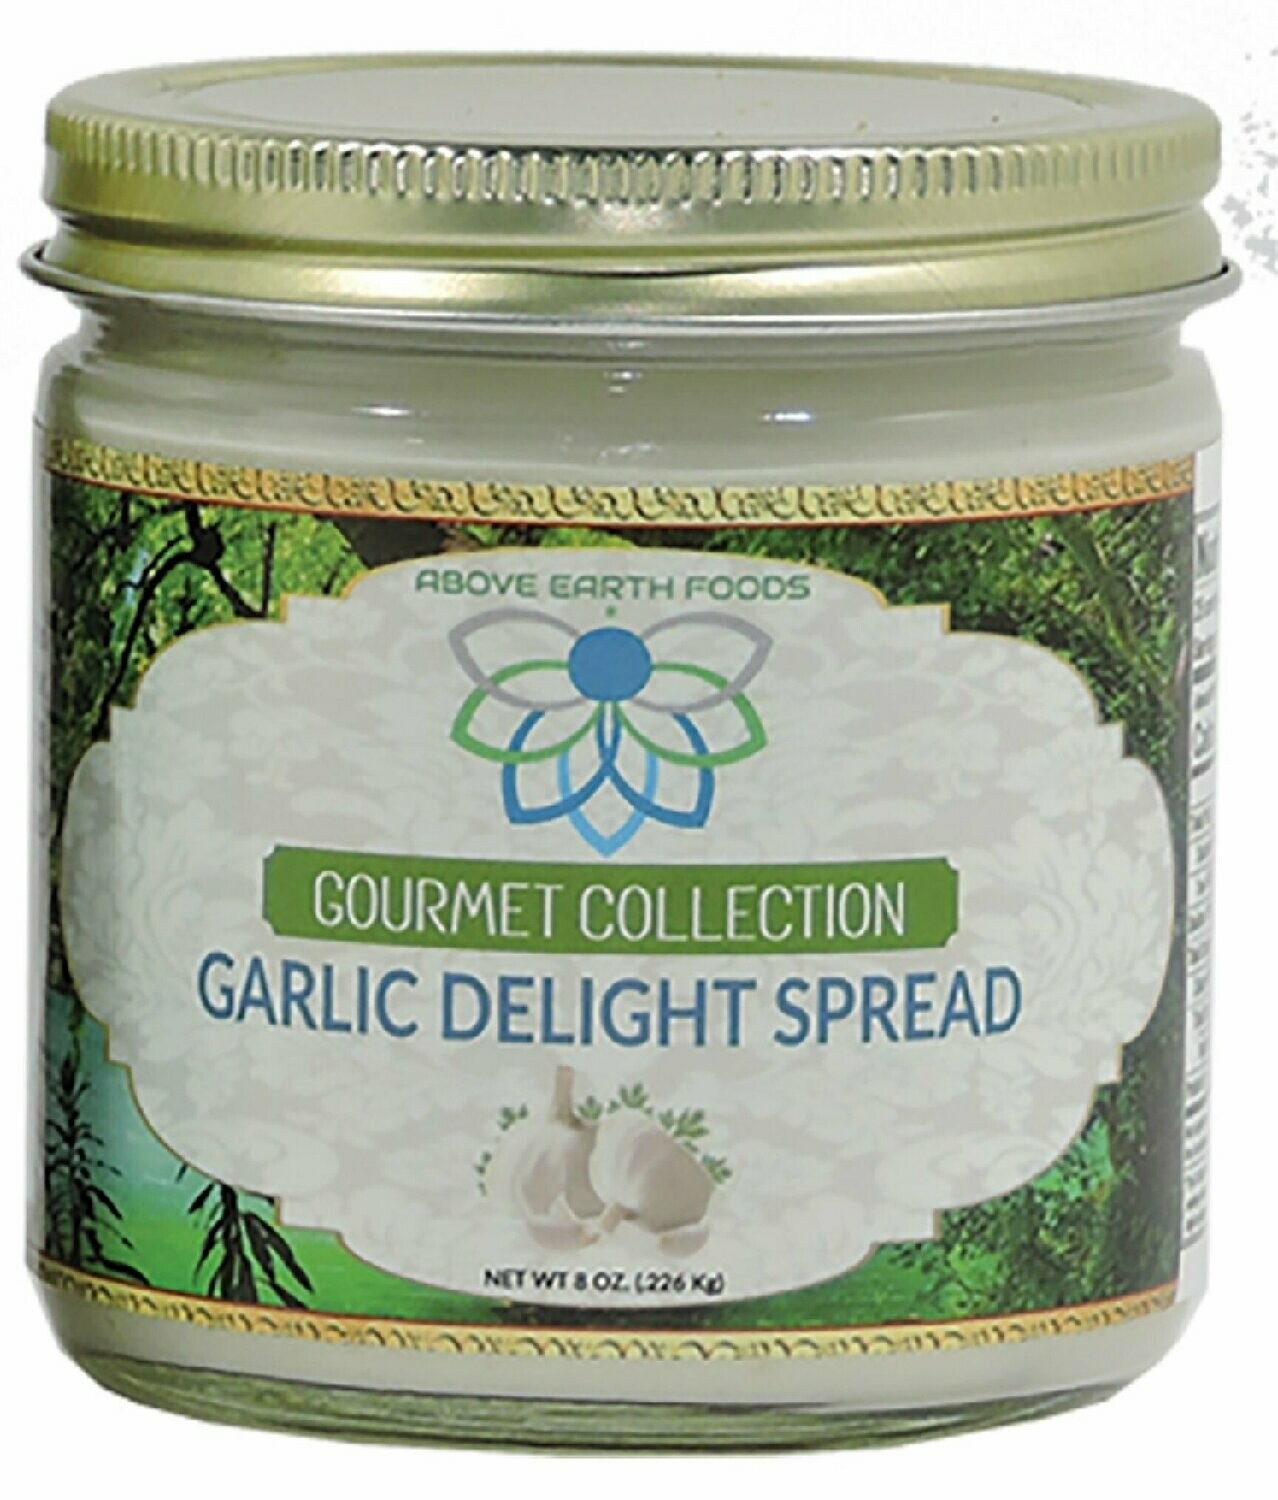 Garlic Delight Spread